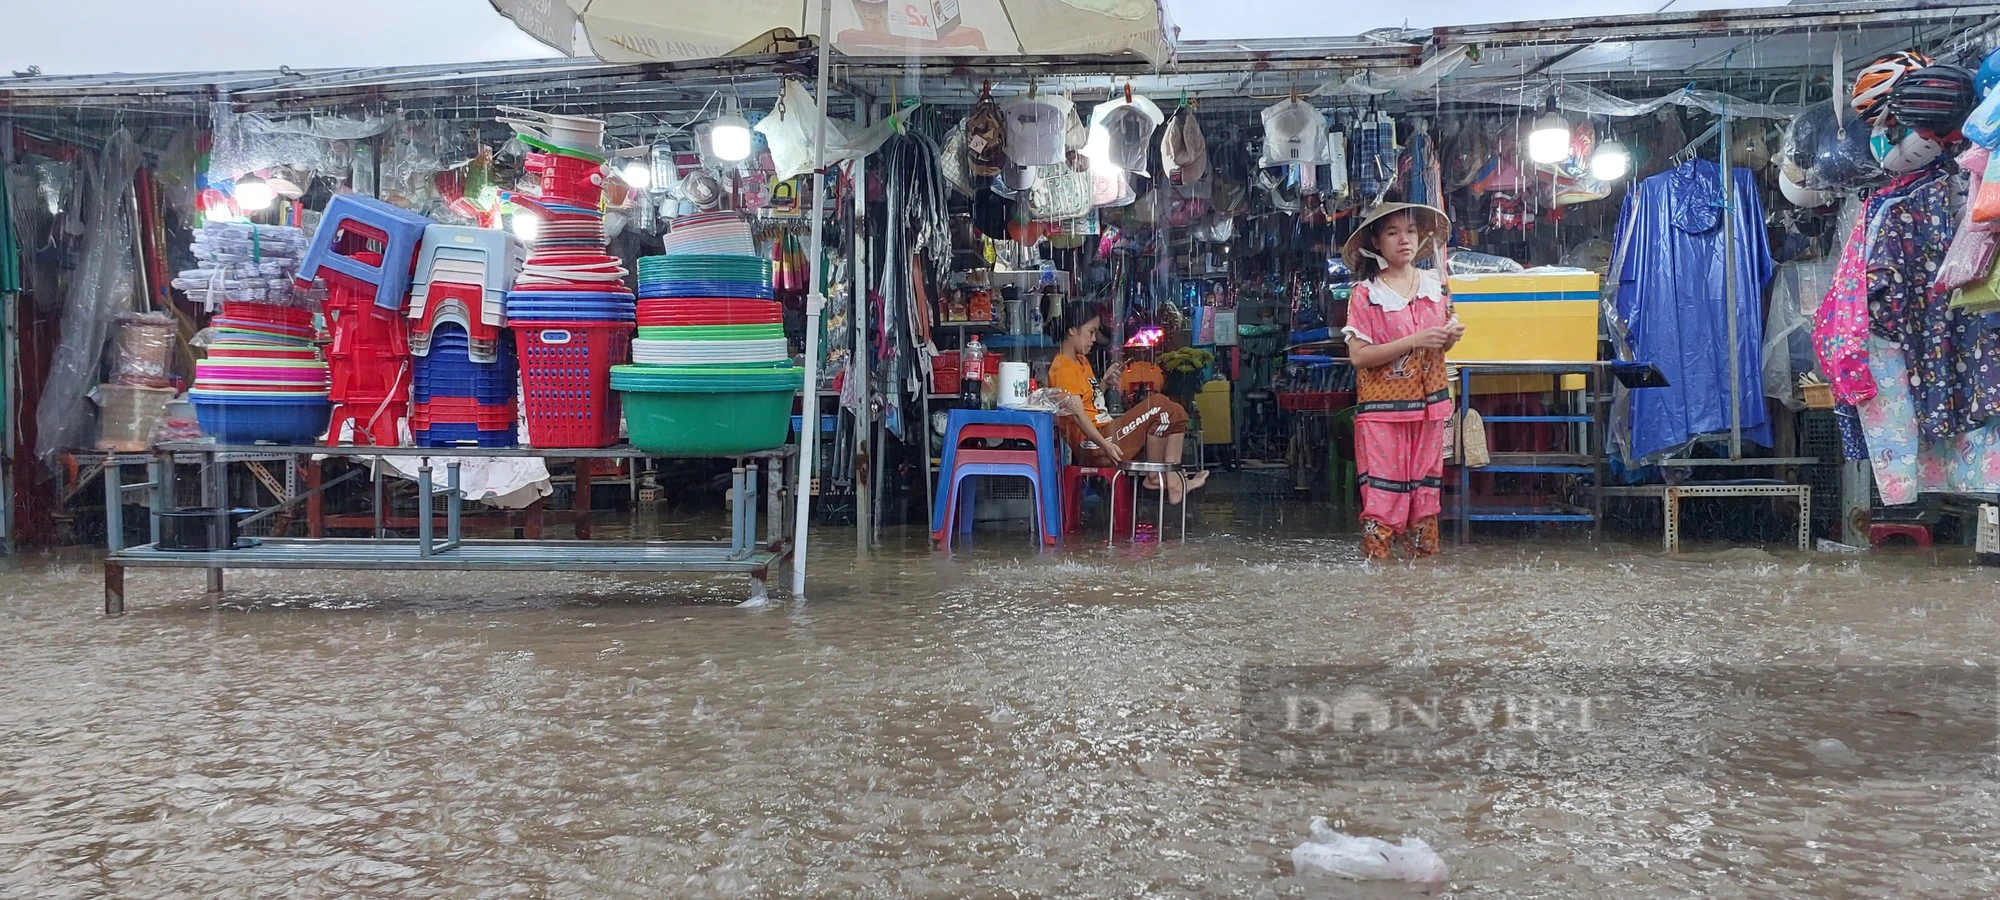 Đường ngập nước lênh láng, người dân chật vật dẫn xe chết máy sau mưa lớn tại Đà Nẵng - Ảnh 5.